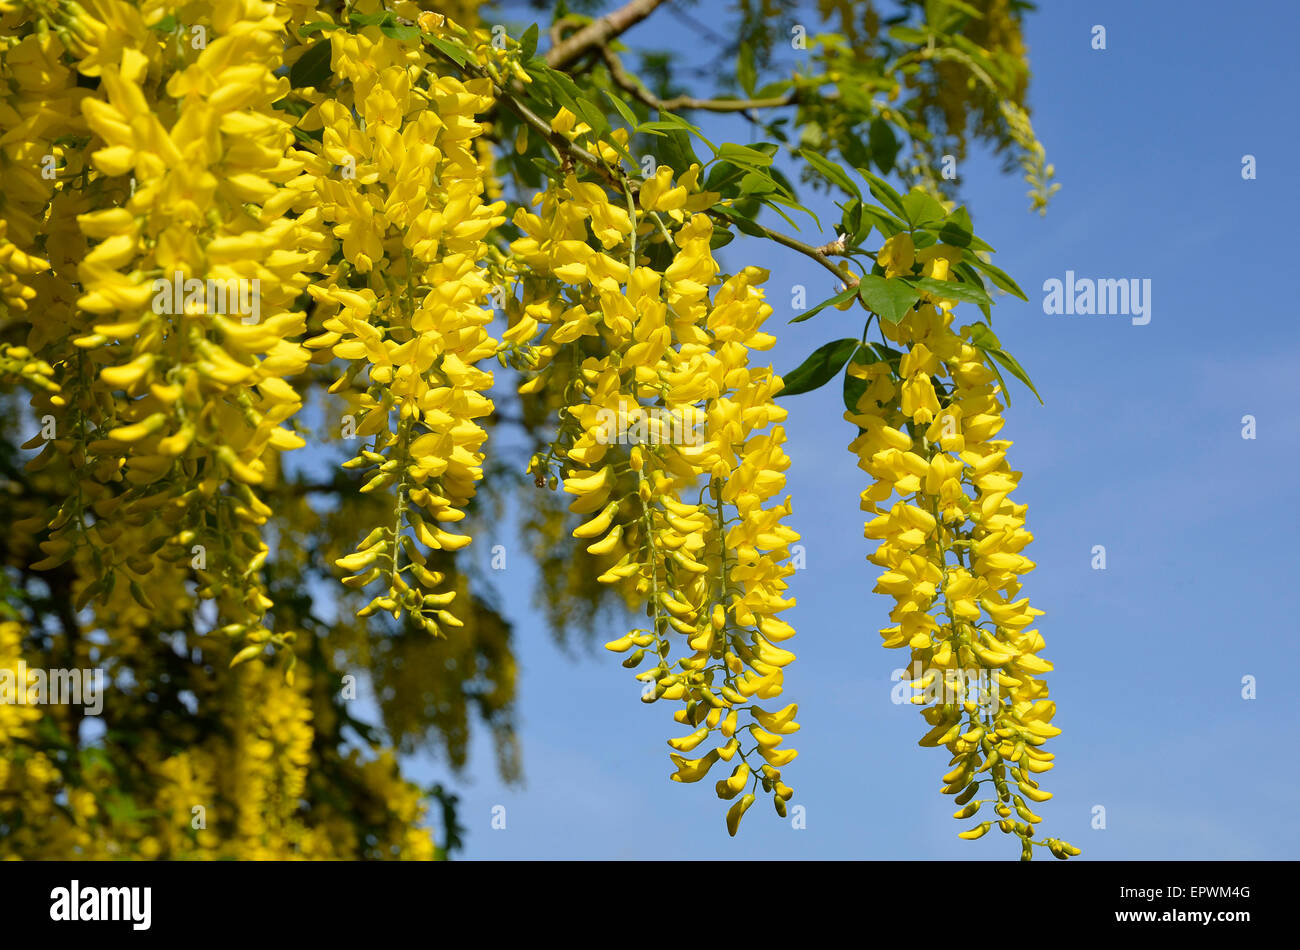 Di colore giallo brillante e fiori di un albero il Maggiociondolo (spesso chiamato catena d'oro/pioggia), un comune albero ornamentale in giardini inglesi. Foto Stock